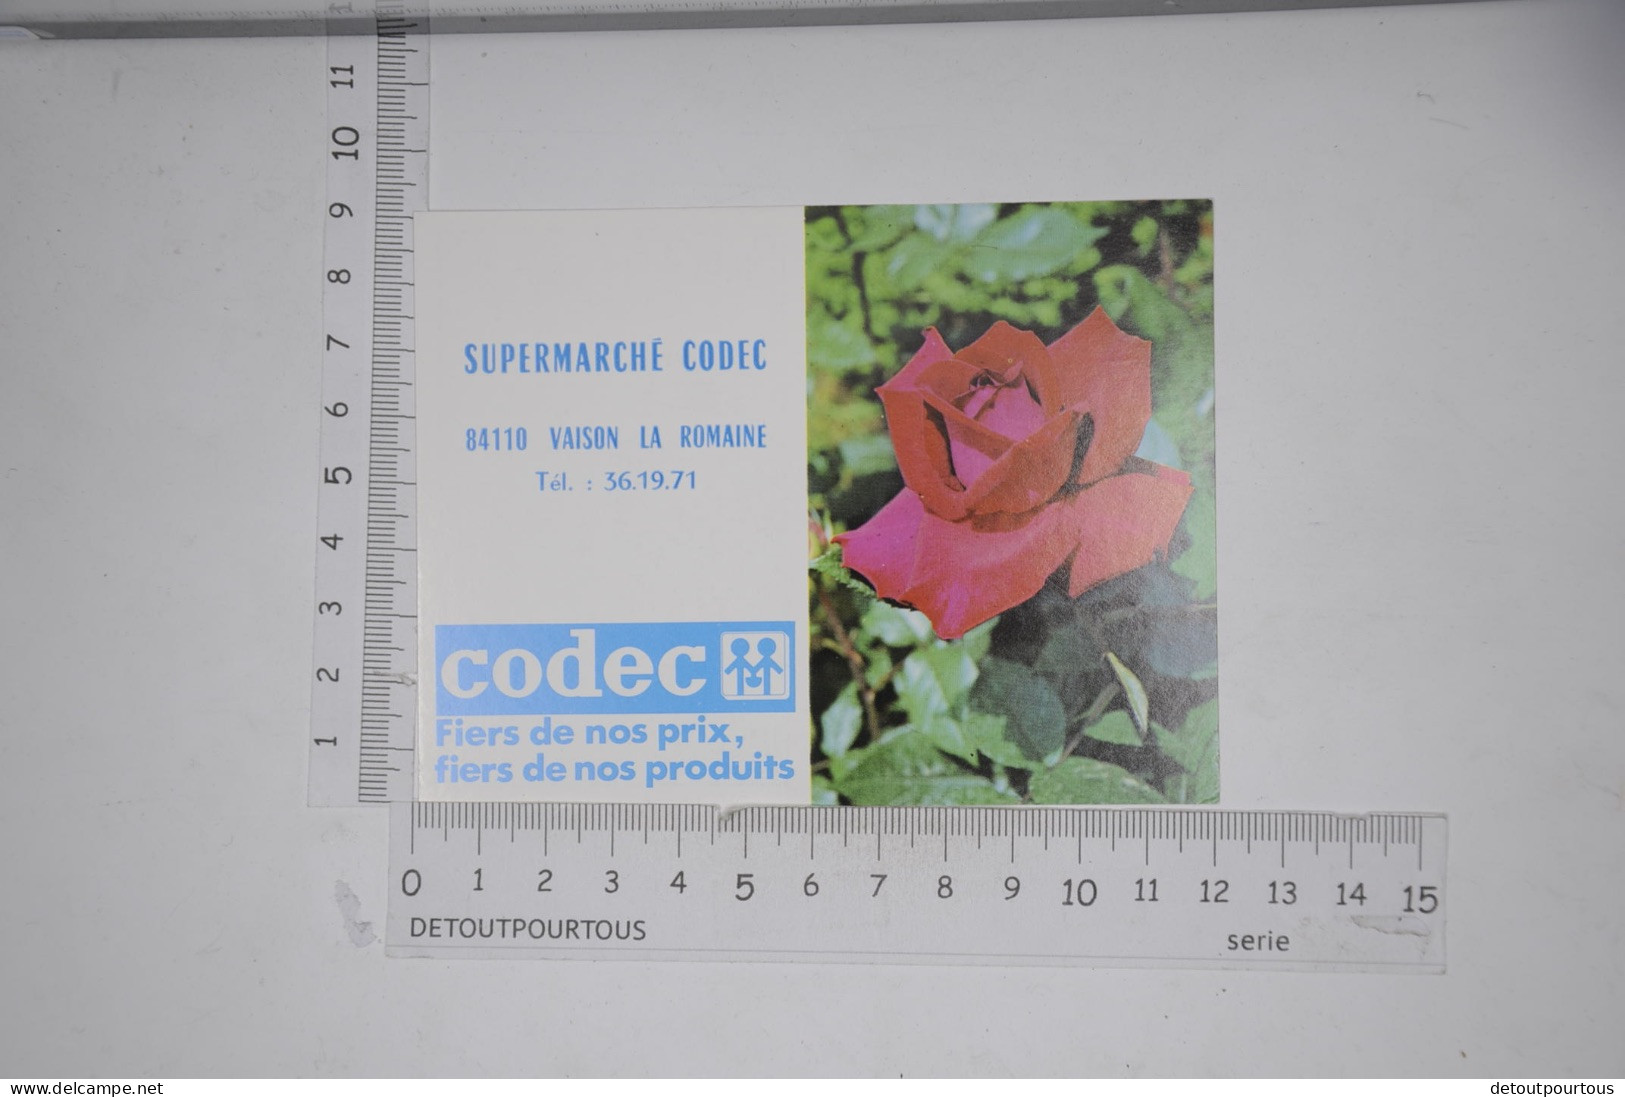 Lot de 9 calendriers mini calendrier 1984 Supermarché CODEC 84110 Vaison la Romaine / illustration serie fleurs fleur